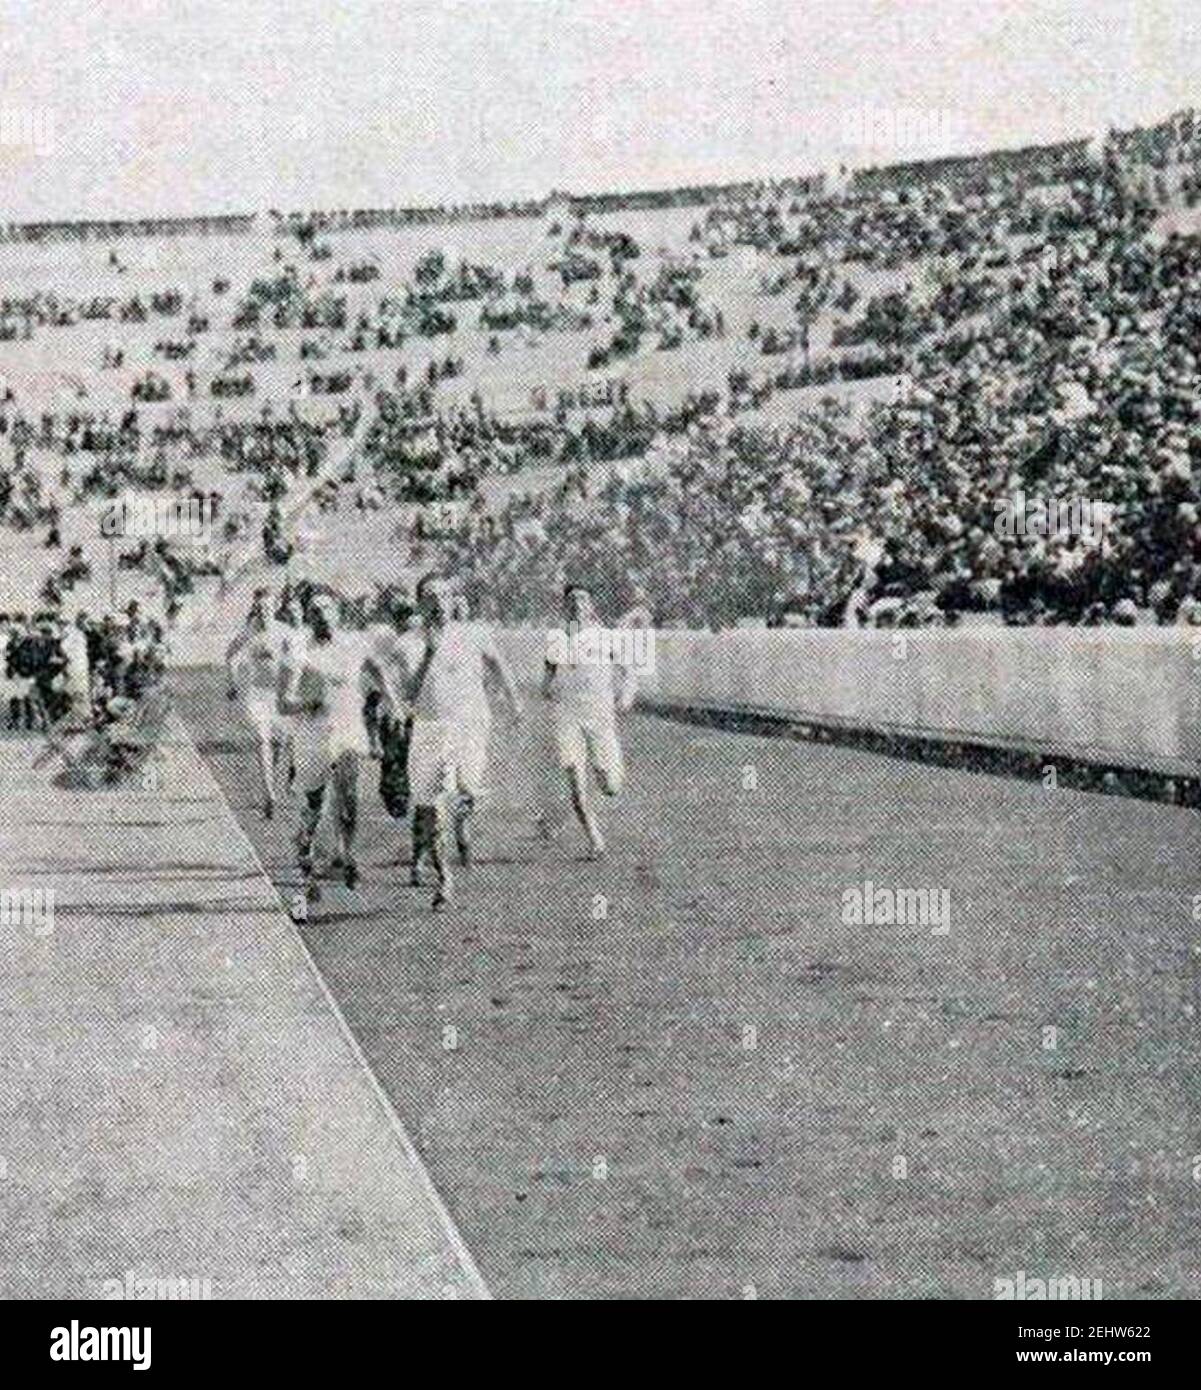 Paul Pilgrim, vainqueur des 400 et 800 mètres à Athènes en 1906. Foto Stock